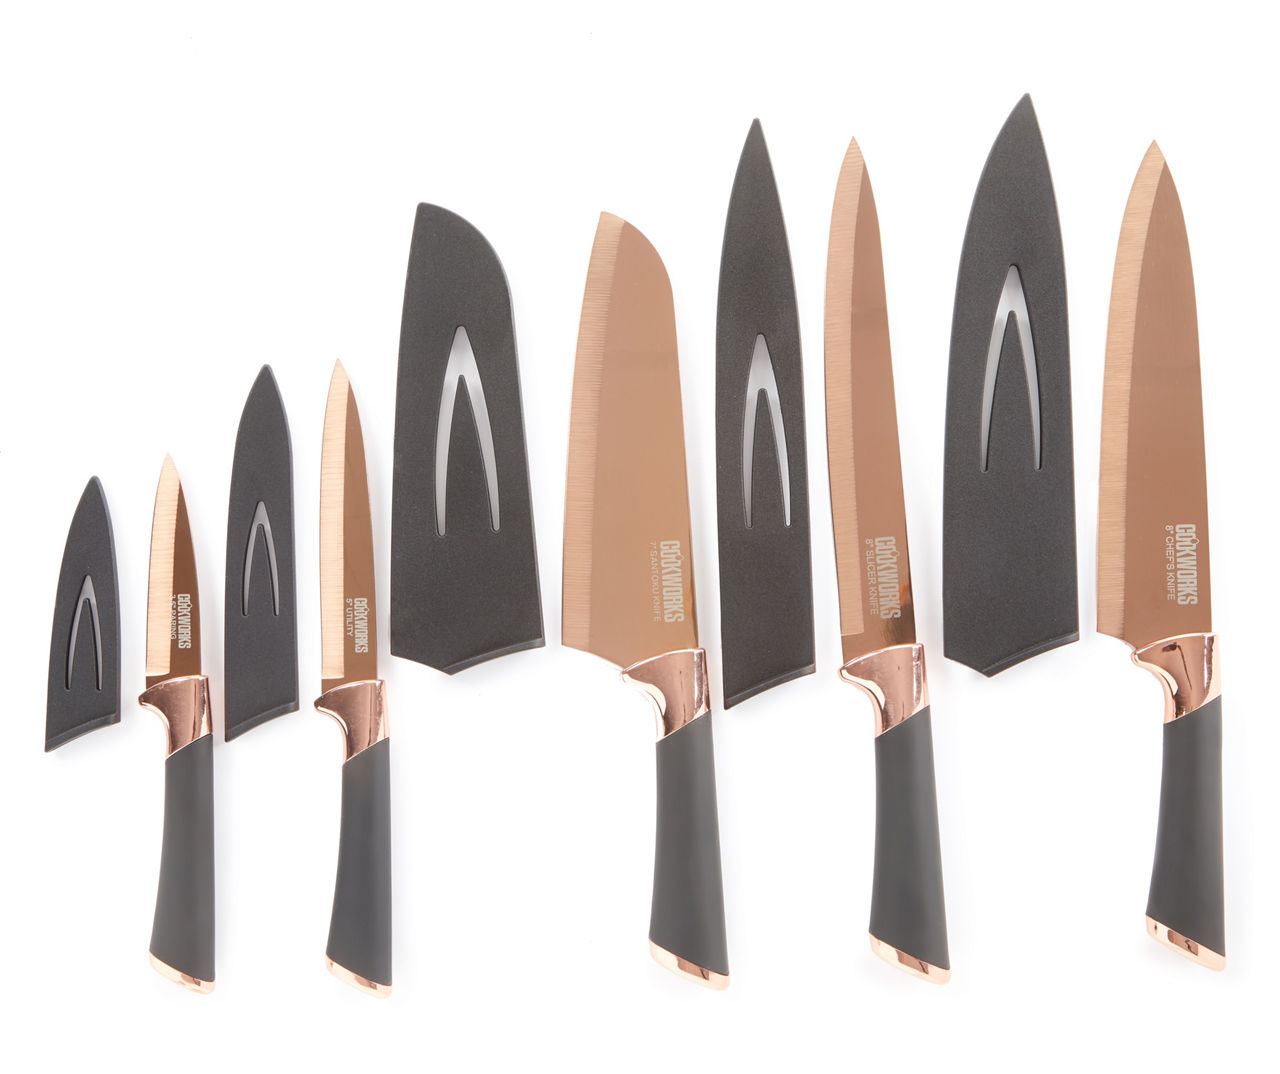 5-Pc. Knife & Sheath Set